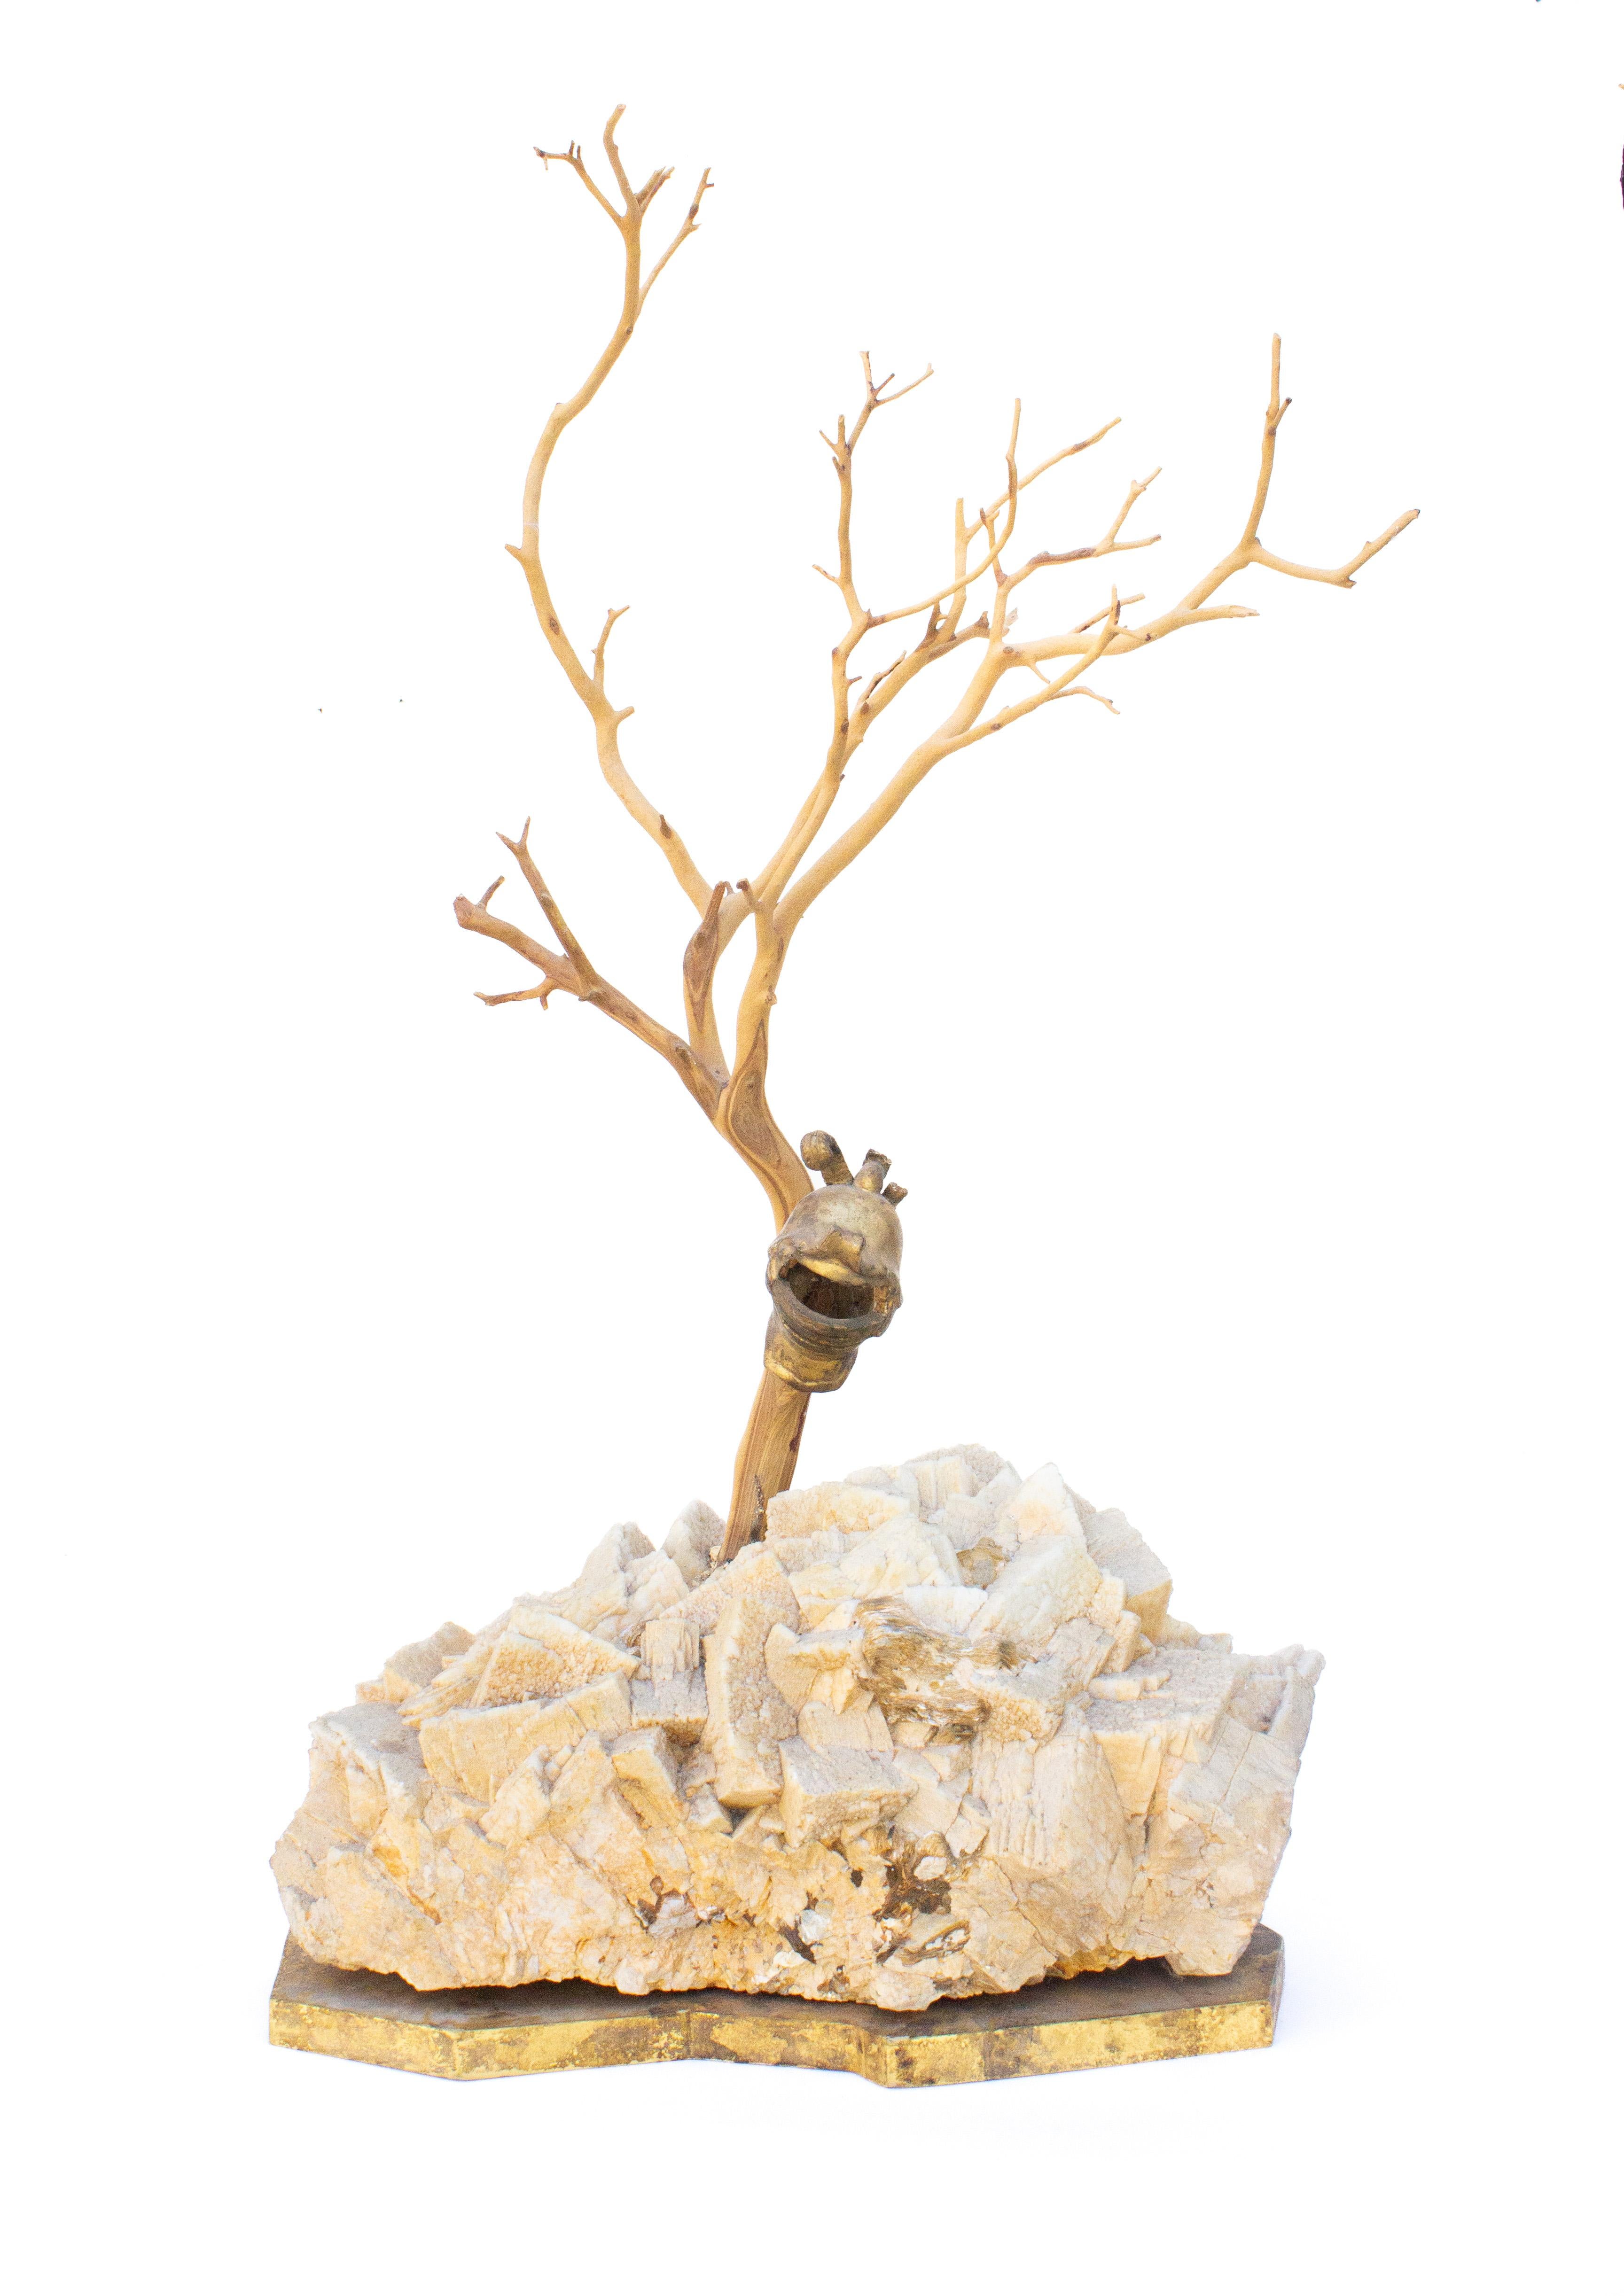 Skulpturaler Baum mit Miniaturhelm aus italienischem Blattgold des 18. Jahrhunderts, montiert auf einem Mineral aus Calcit und Glimmer. Der Helm hängt an einer Art Wüstenholz und ist auf einem Mineral aus Kalzit und Glimmer montiert, das auf einem